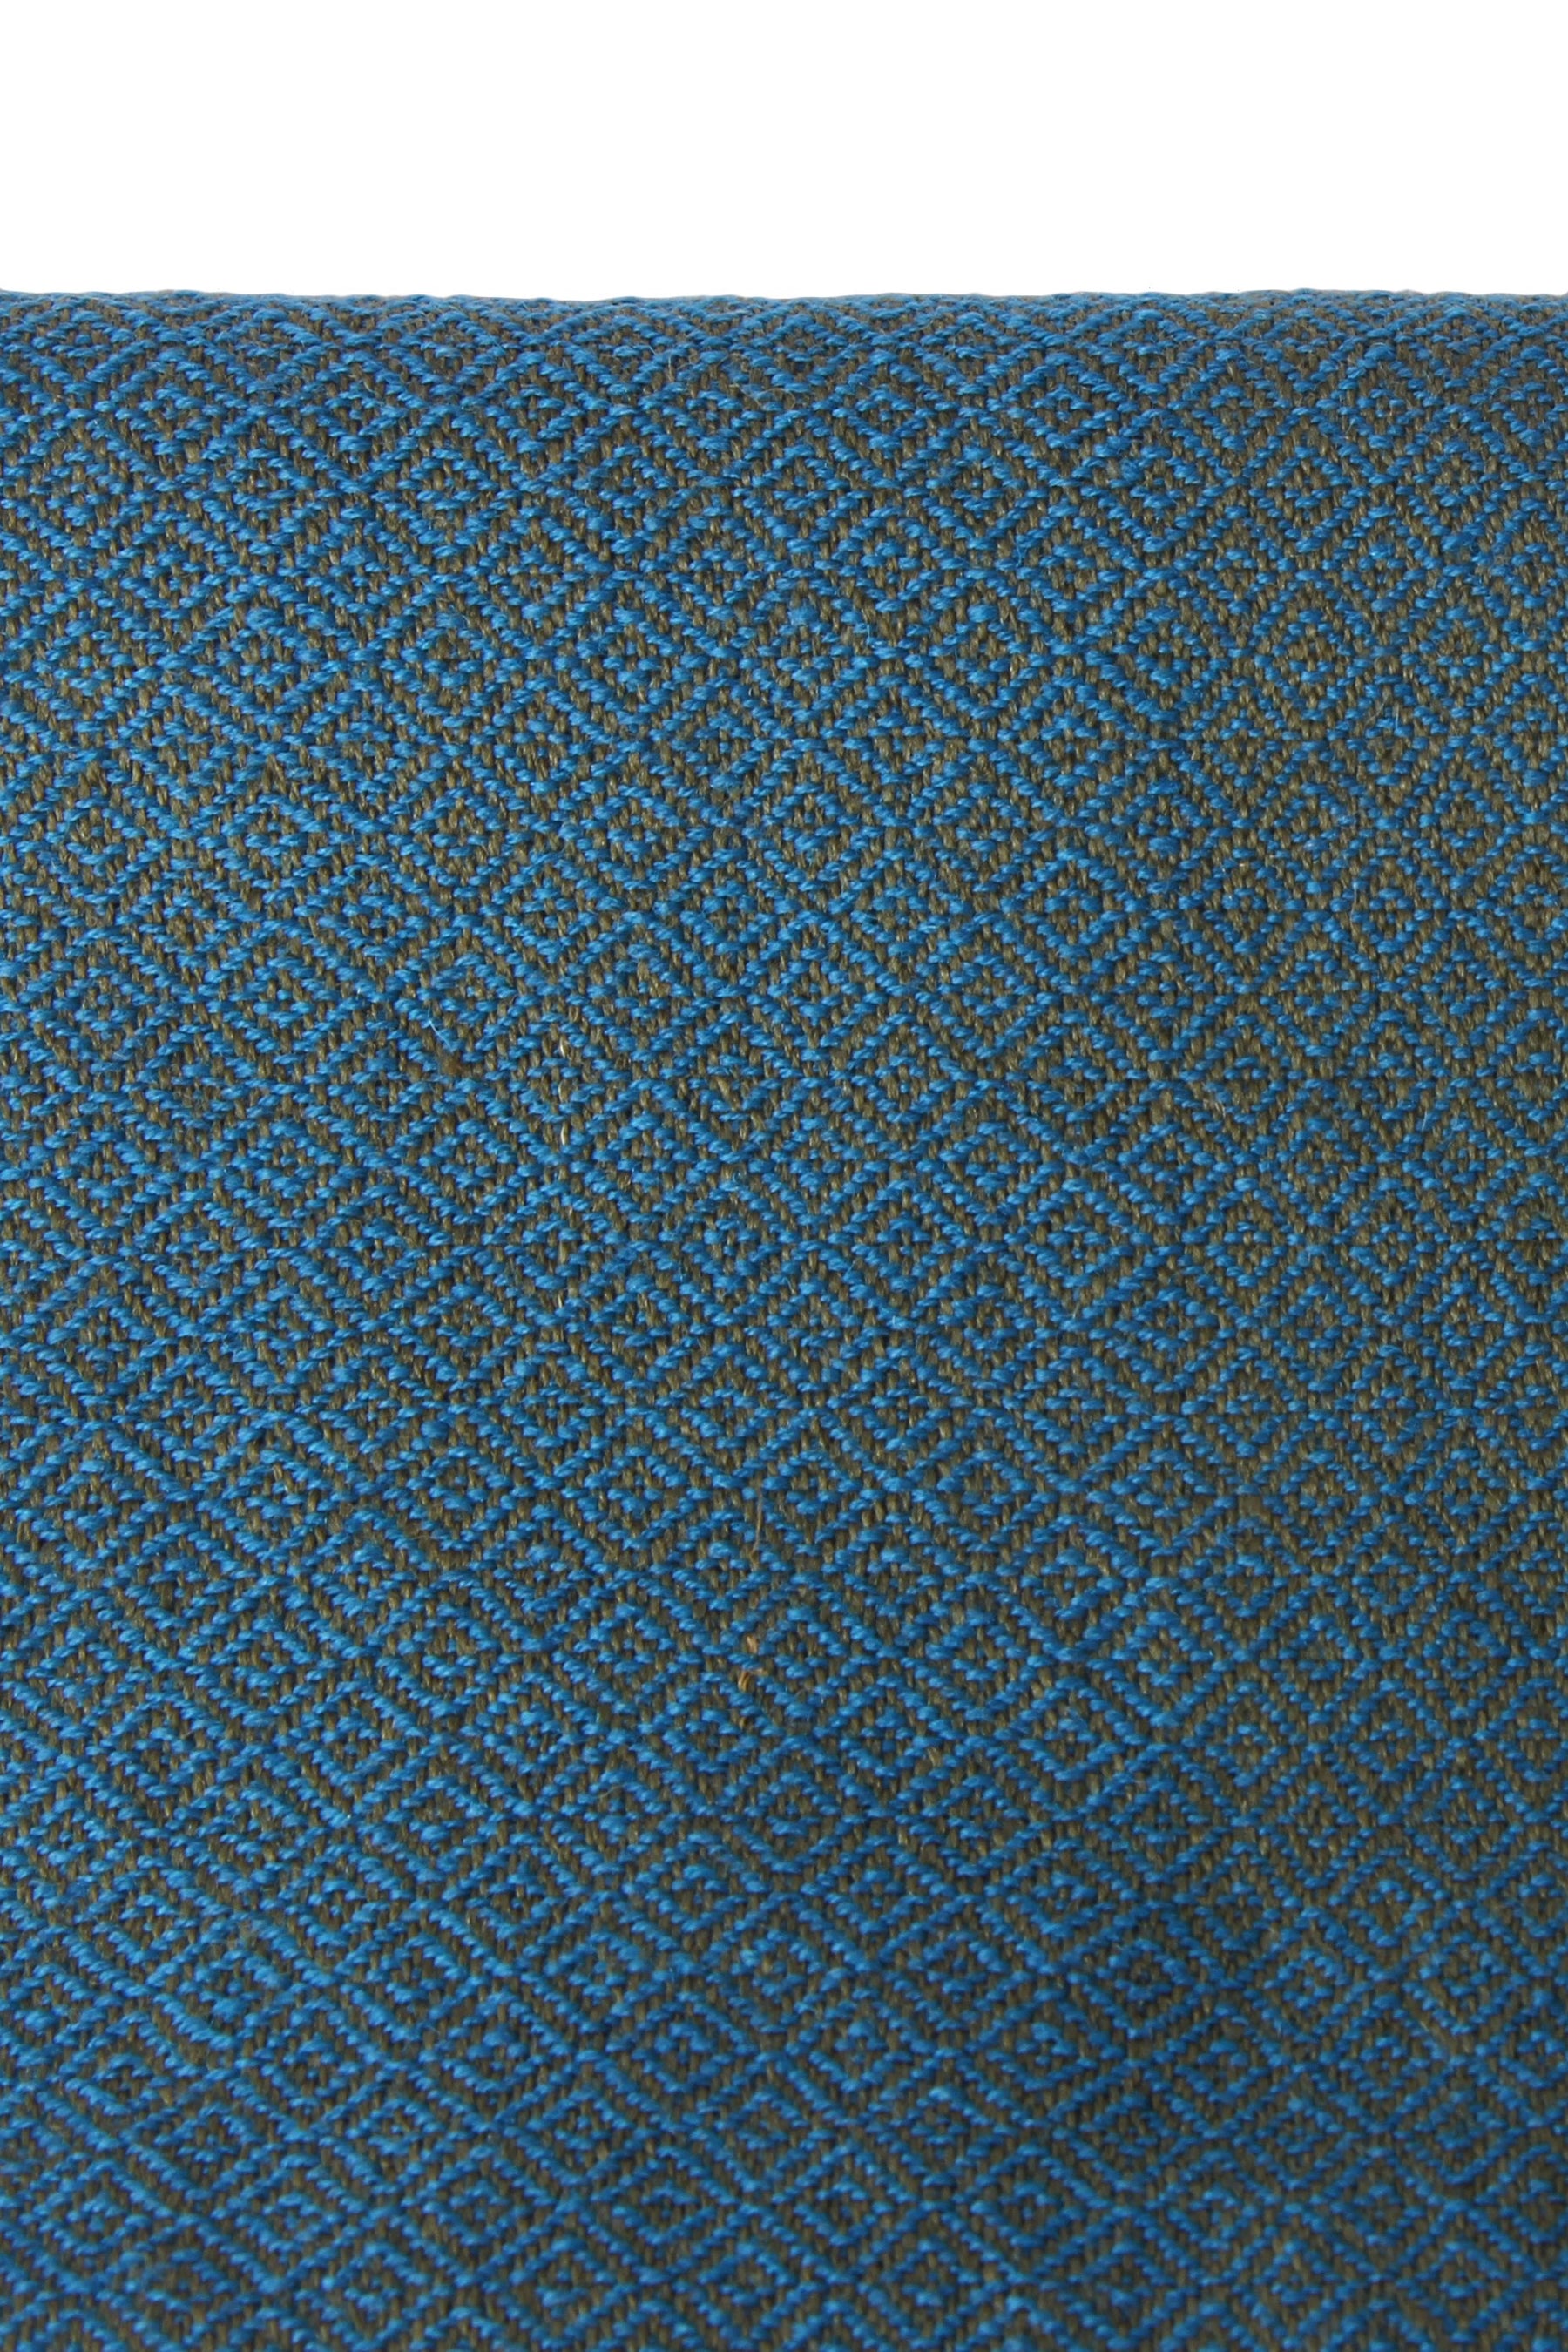 Eir hand-woven wool blue / green